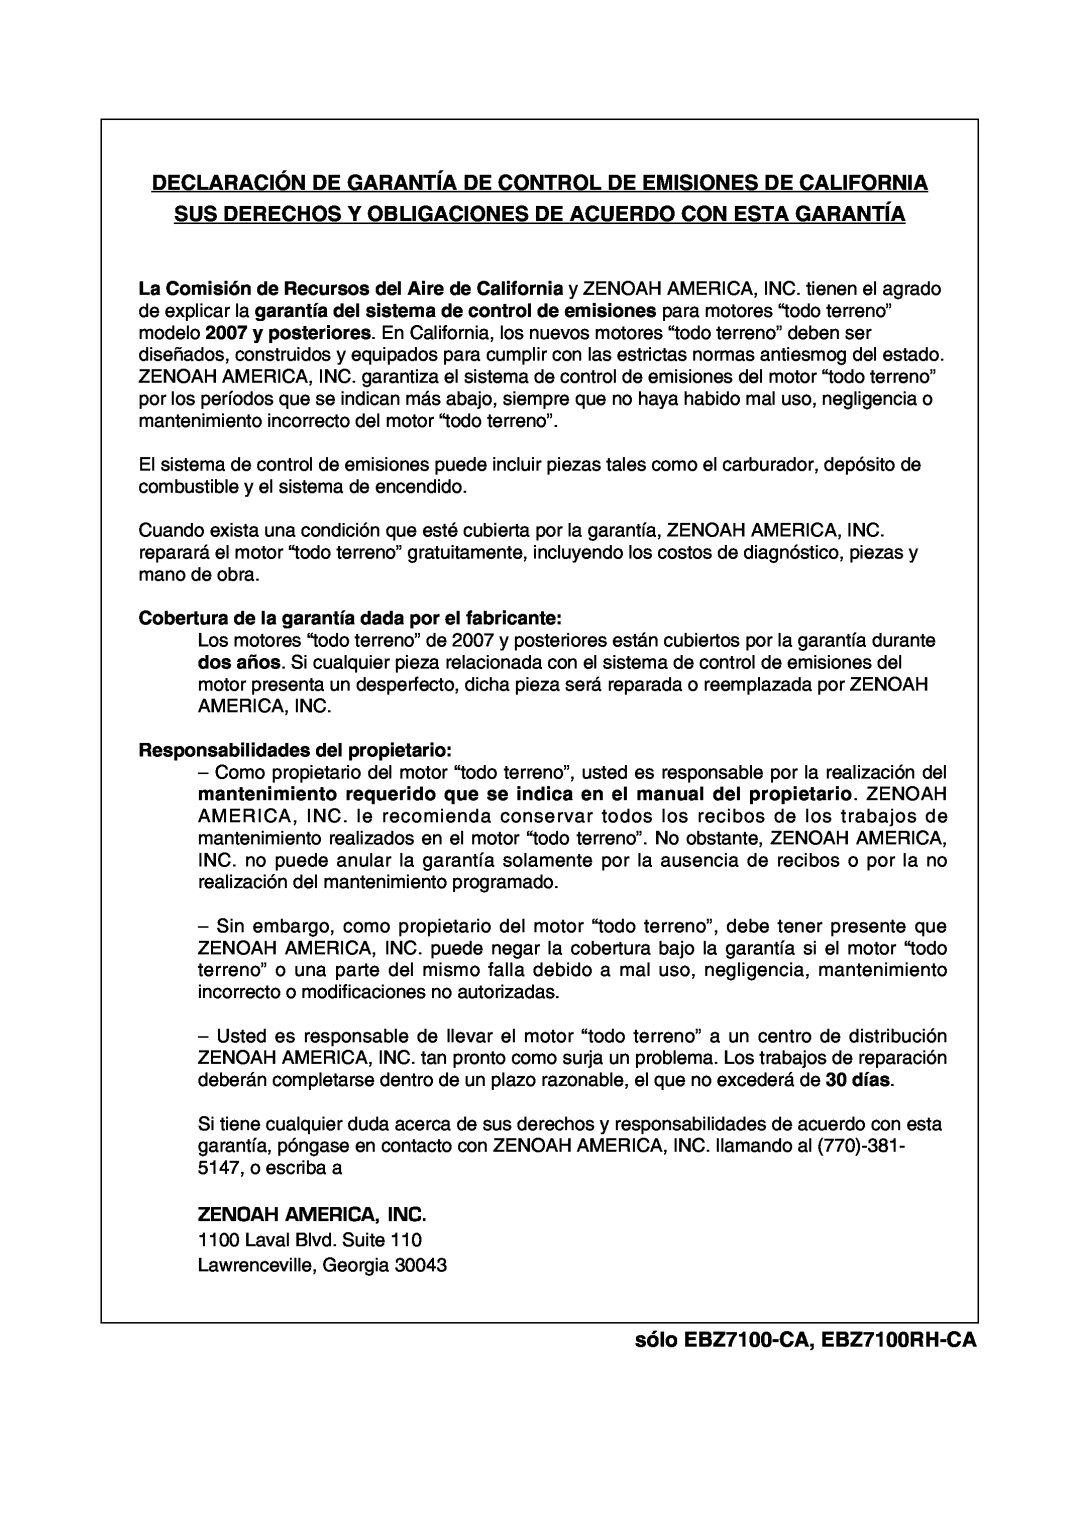 Zenoah manual Declaración De Garantía De Control De Emisiones De California, sólo EBZ7100-CA, EBZ7100RH-CA 